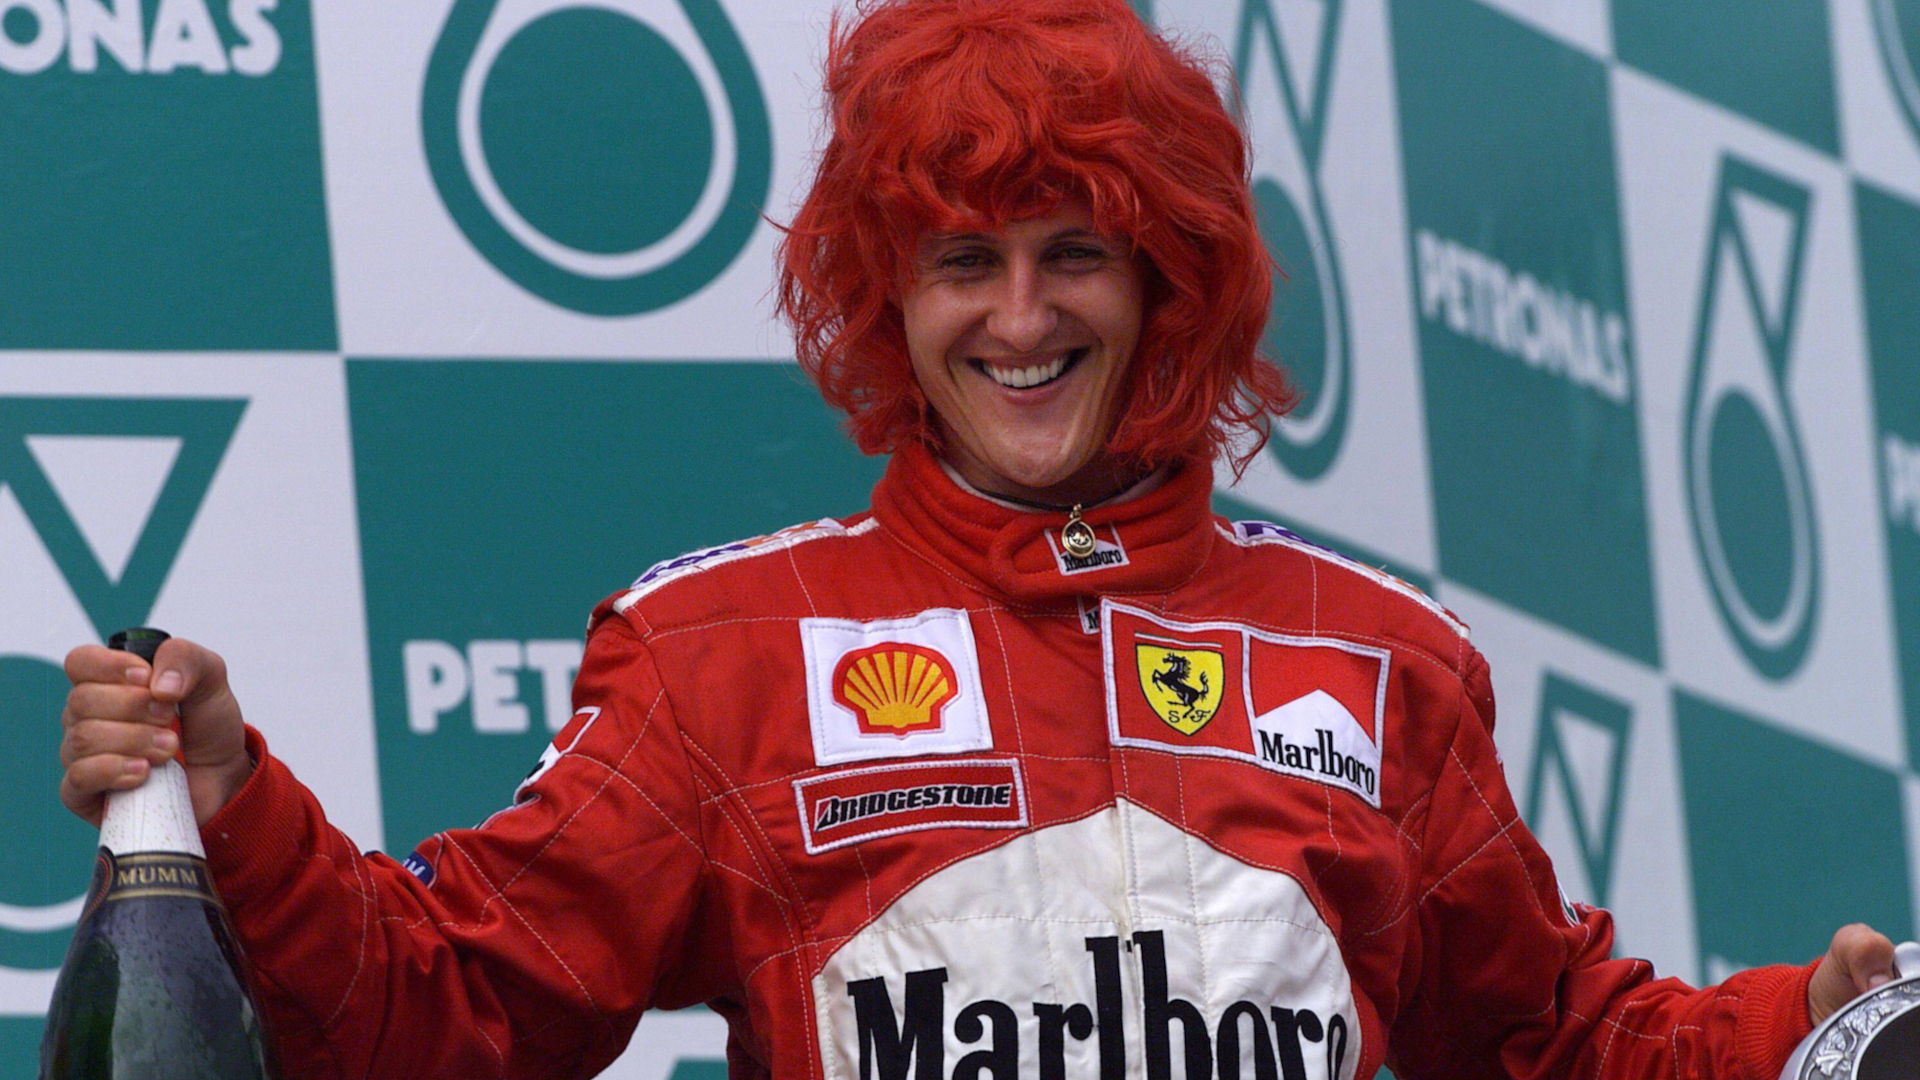 
                <strong>Schumi holt ersten Titel mit Ferrari</strong><br>
                Aber natürlich gab es 2000 auch viele positive Nachrichten. In seiner fünften Saison bei der Scuderia Ferrari holte Michael Schumacher endlich seinen ersten WM-Titel mit dem italienischen Rennstall in der Formel 1. Es war sein dritter von insgesamt sieben WM-Triumphen.
              